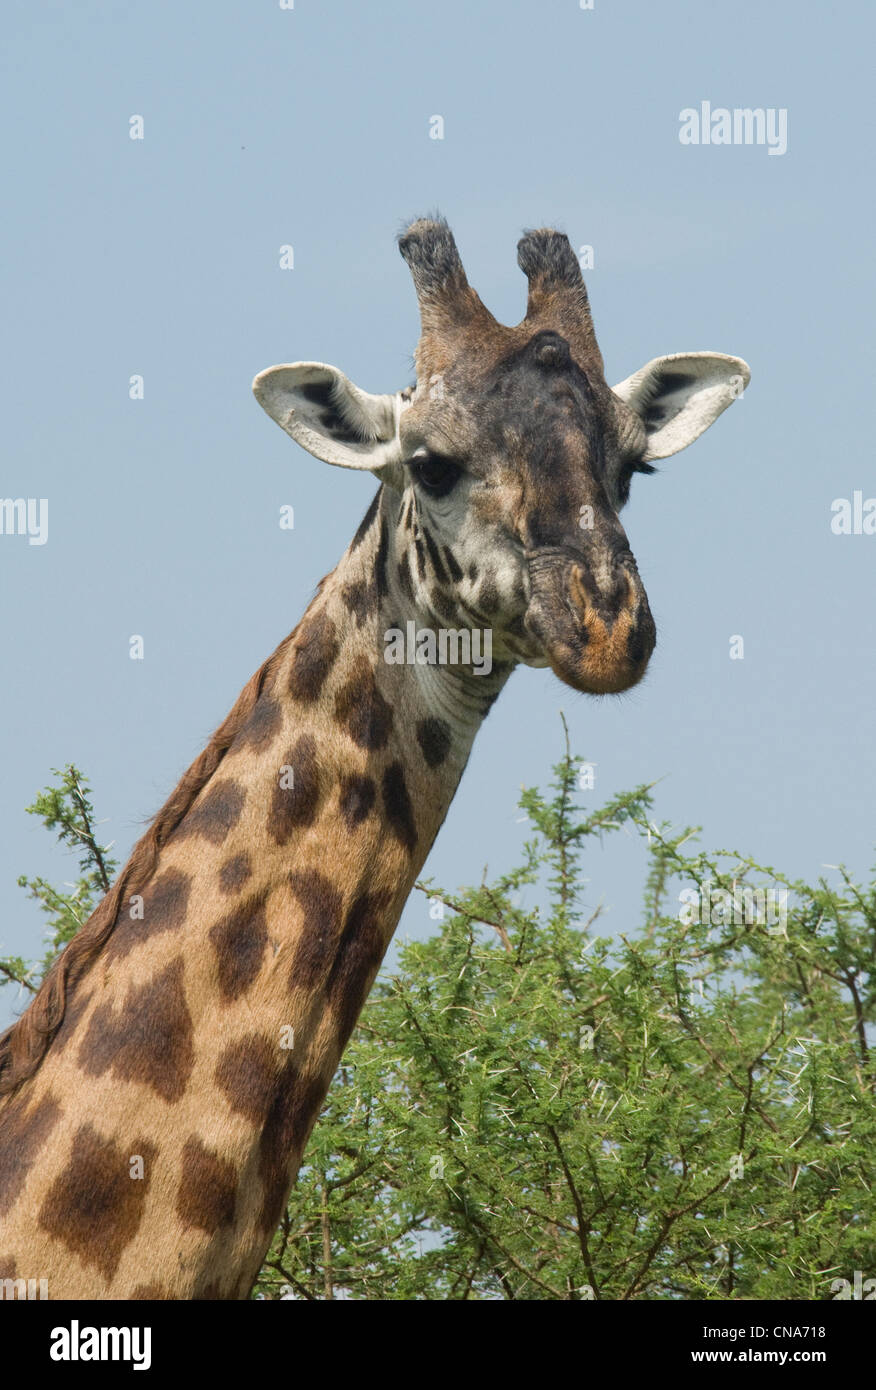 Masai giraffe-close up Stock Photo